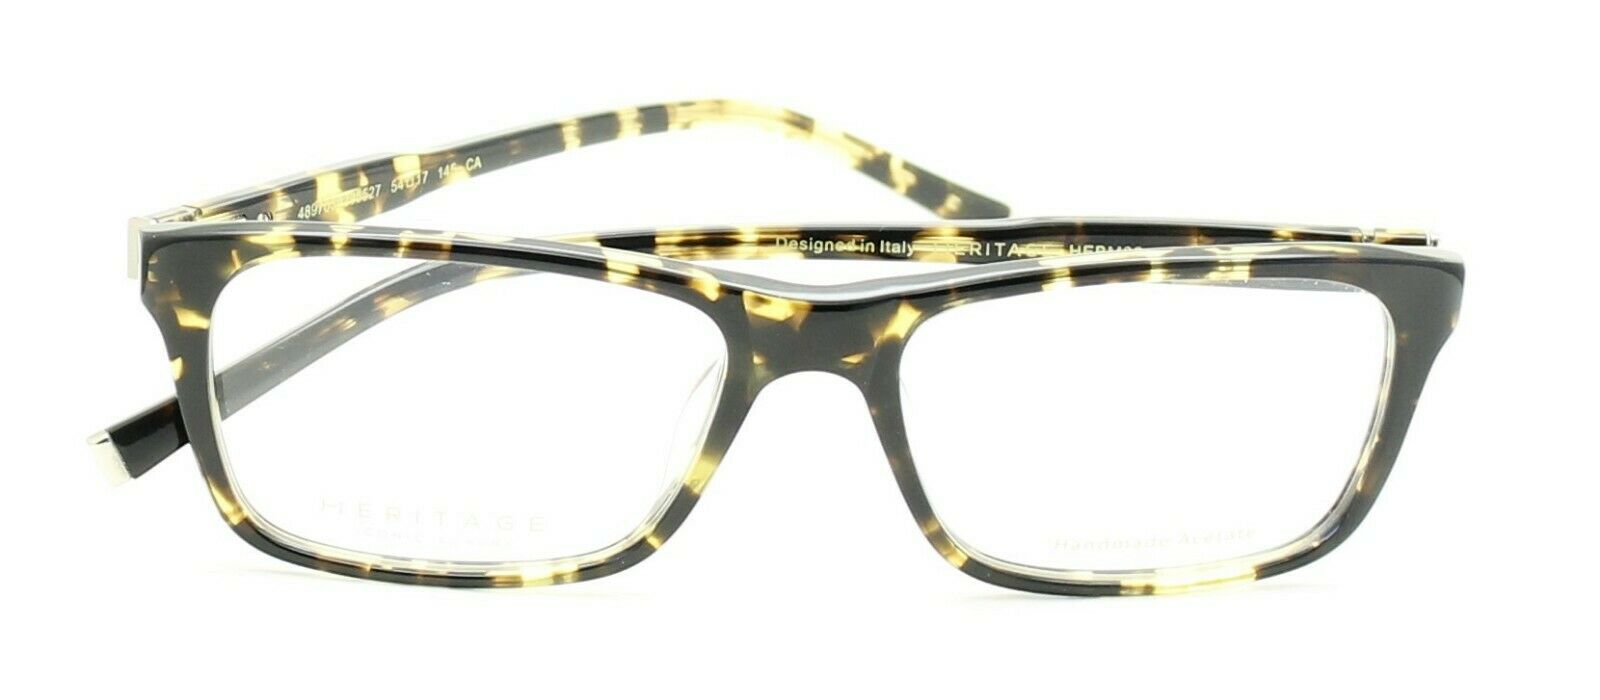 HERITAGE Iconic Luxury HEBM02 HY Eyewear FRAMES Eyeglasses RX Optical Glasses